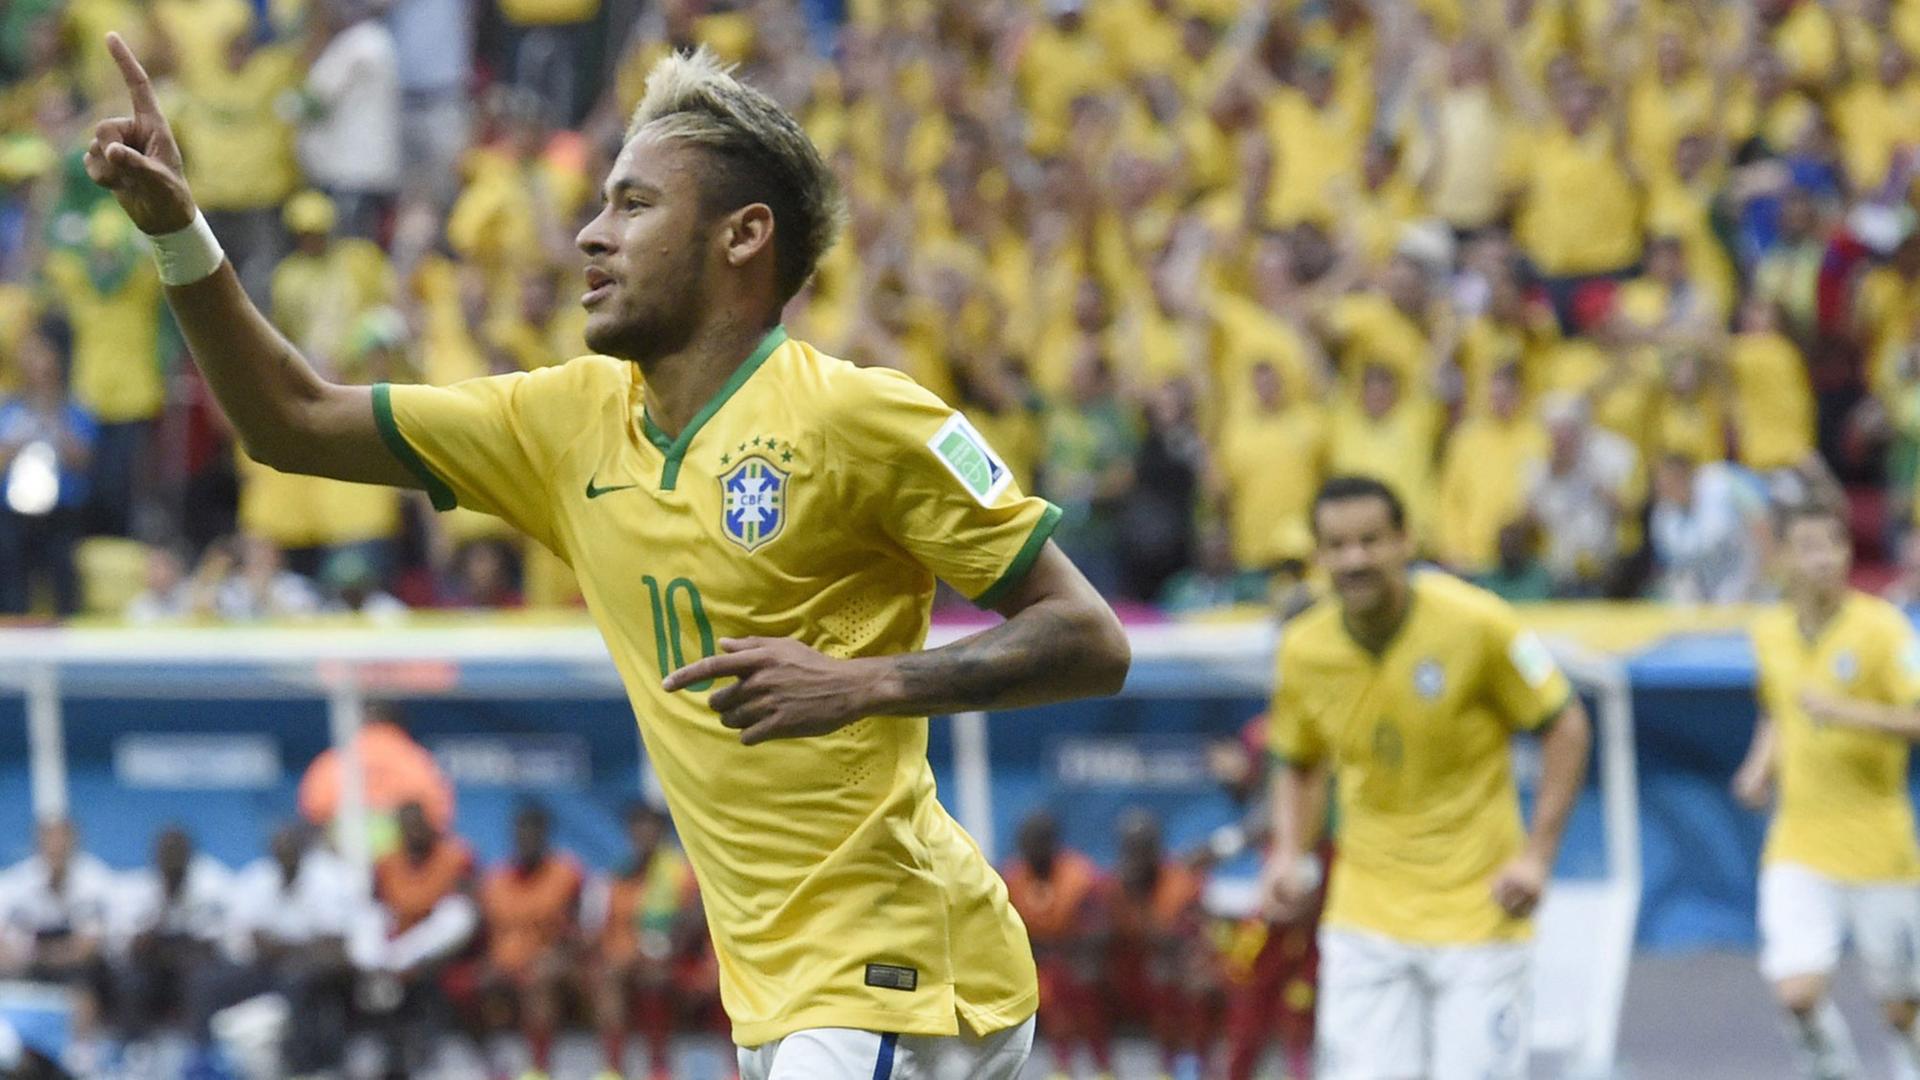 Brasiliens Weltklassestürmer Neymar freut sich beim 4:1 gegen Kamerun, dem dritten Vorrundenspiel seines Teams während der Fußball-WM 2014.